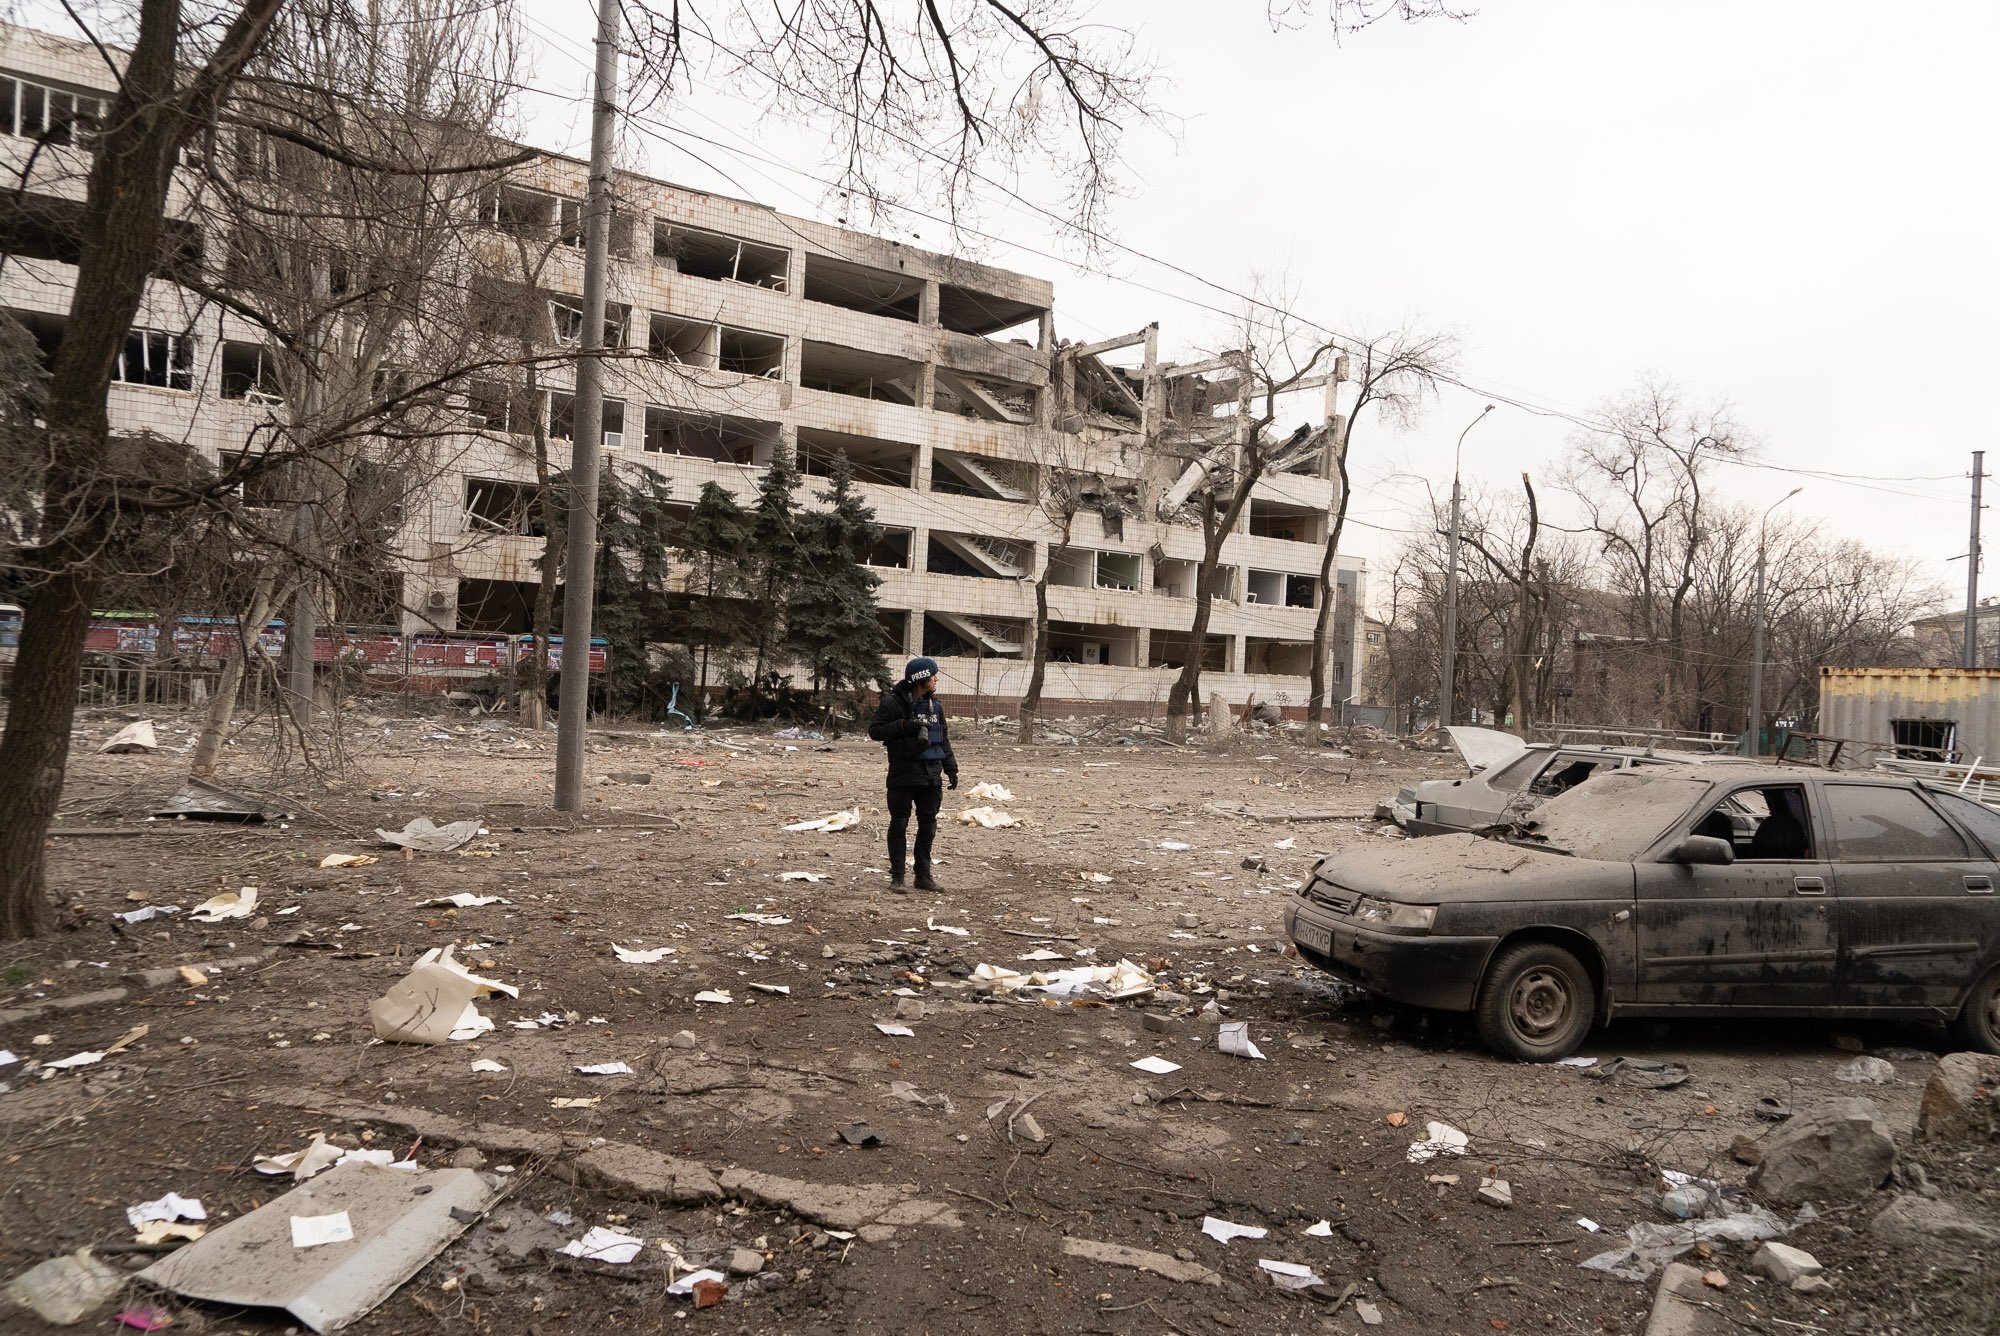 Ukrainian filmmakers center resilience, horrors of war at Sundance Film Festival